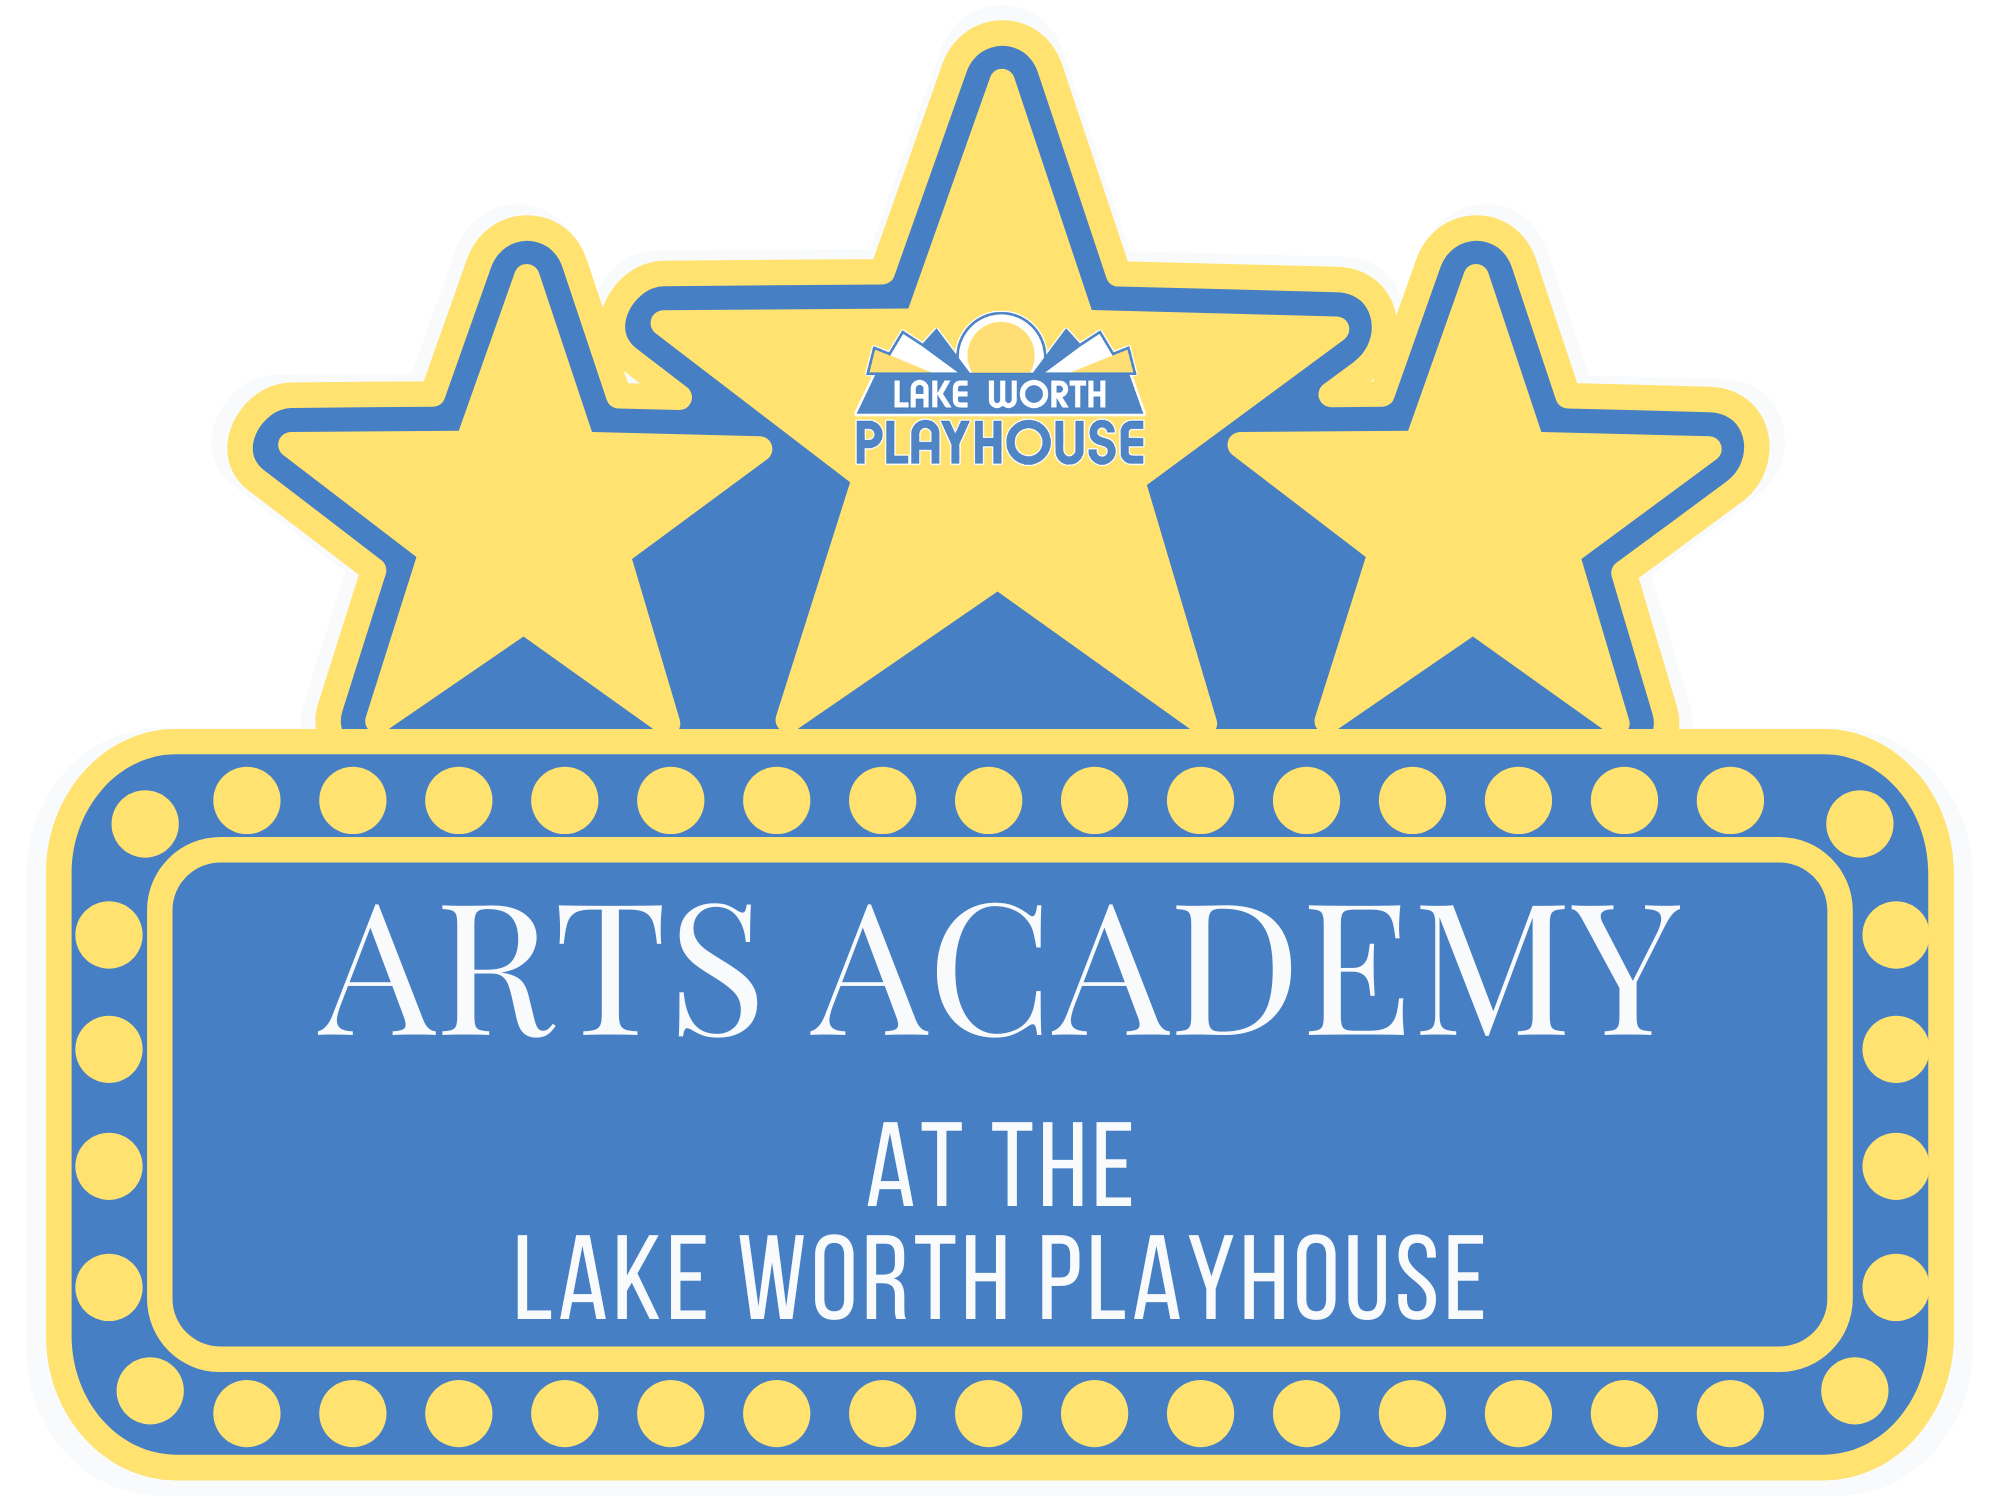 Arts Academy at the Lake Worth Playhouse